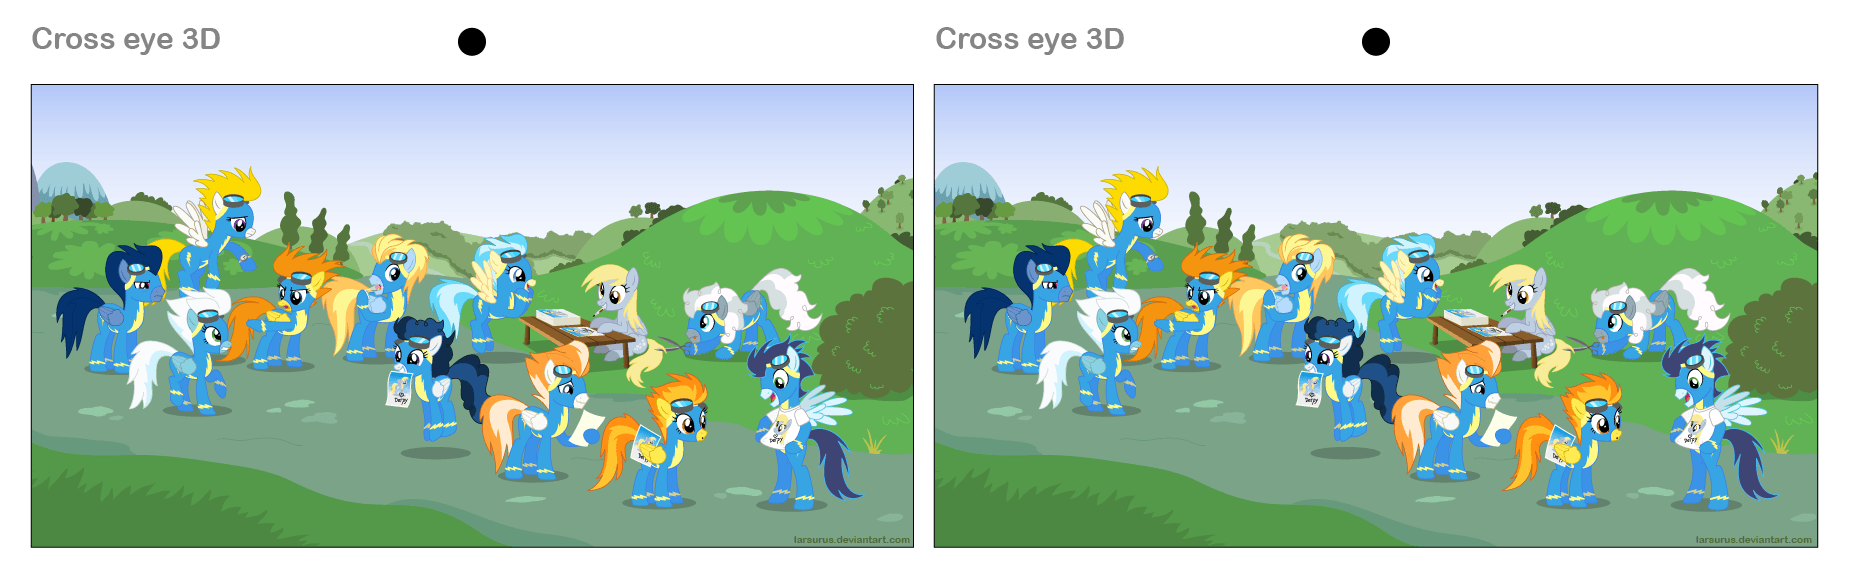 3D Image Crossed Eyes